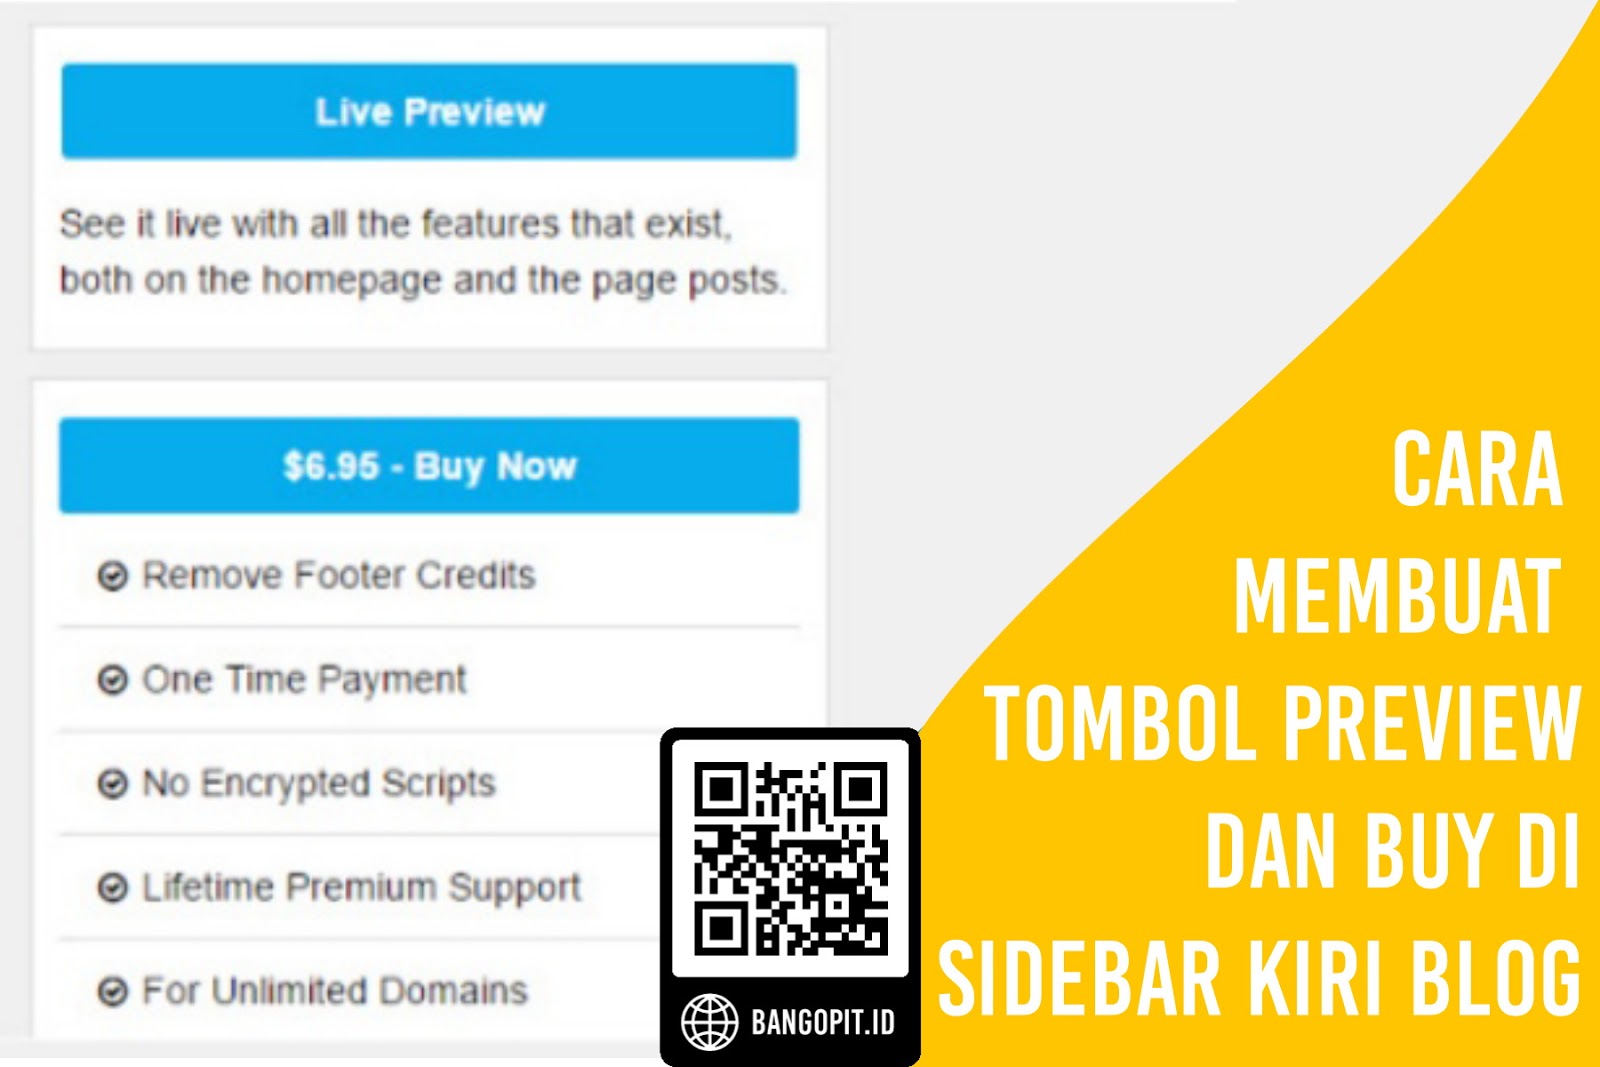 Cara Membuat Tombol Preview dan Buy di Sidebar Kiri Blog √  Cara Membuat Tombol Preview dan Buy di Sidebar Kiri Blog